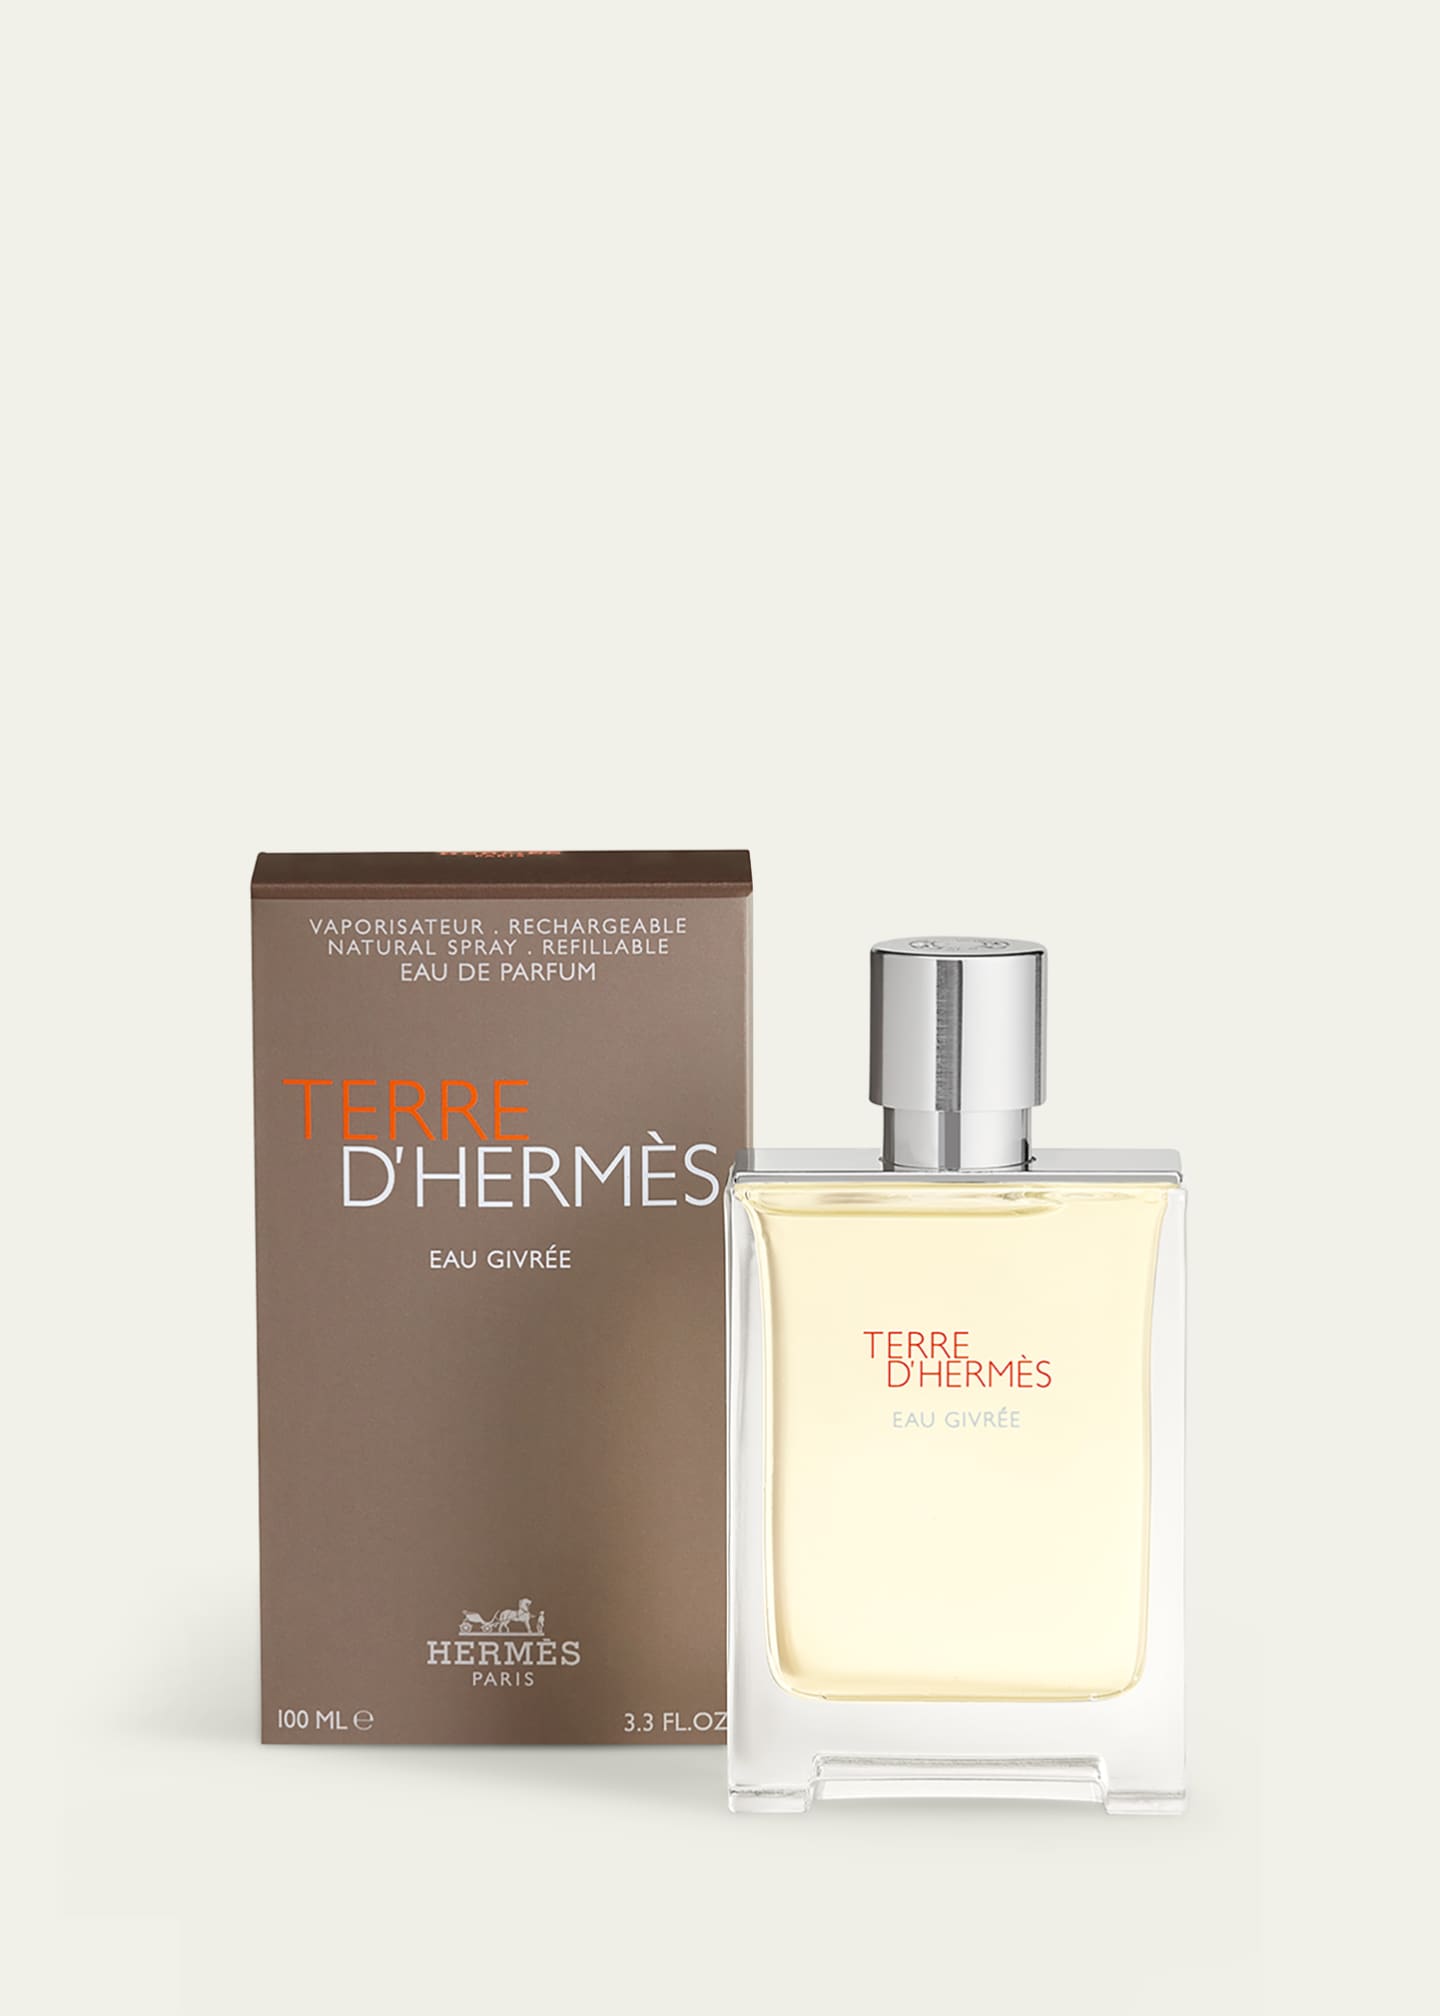 Hermès Terre d'Hermes Eau Givree Eau de Parfum, 3.4 oz. - Bergdorf Goodman